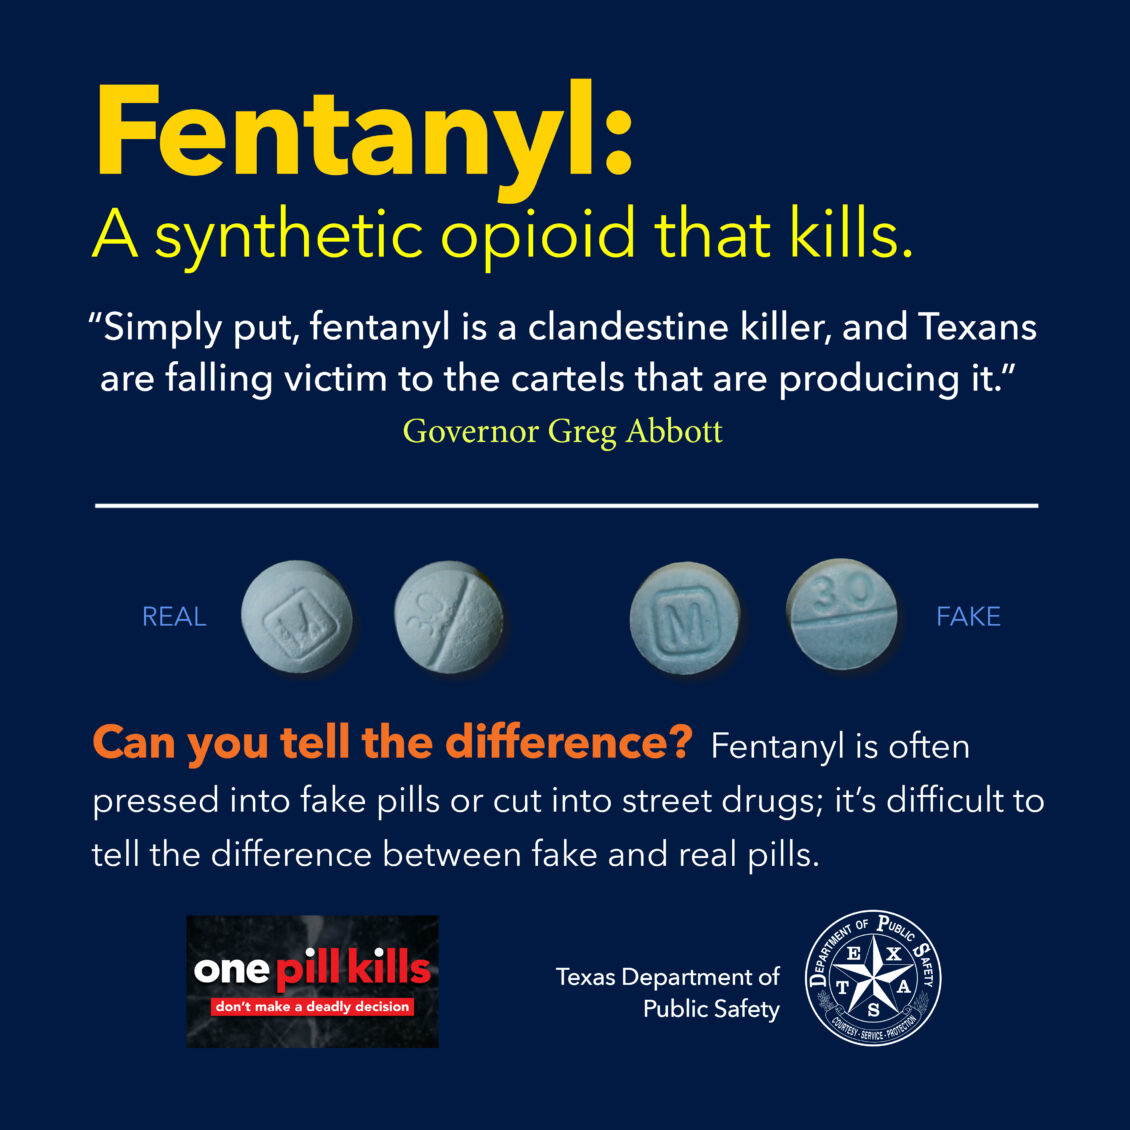 Autoridades de Texas han incautado más de 428 millones de dosis letales de fentanilo